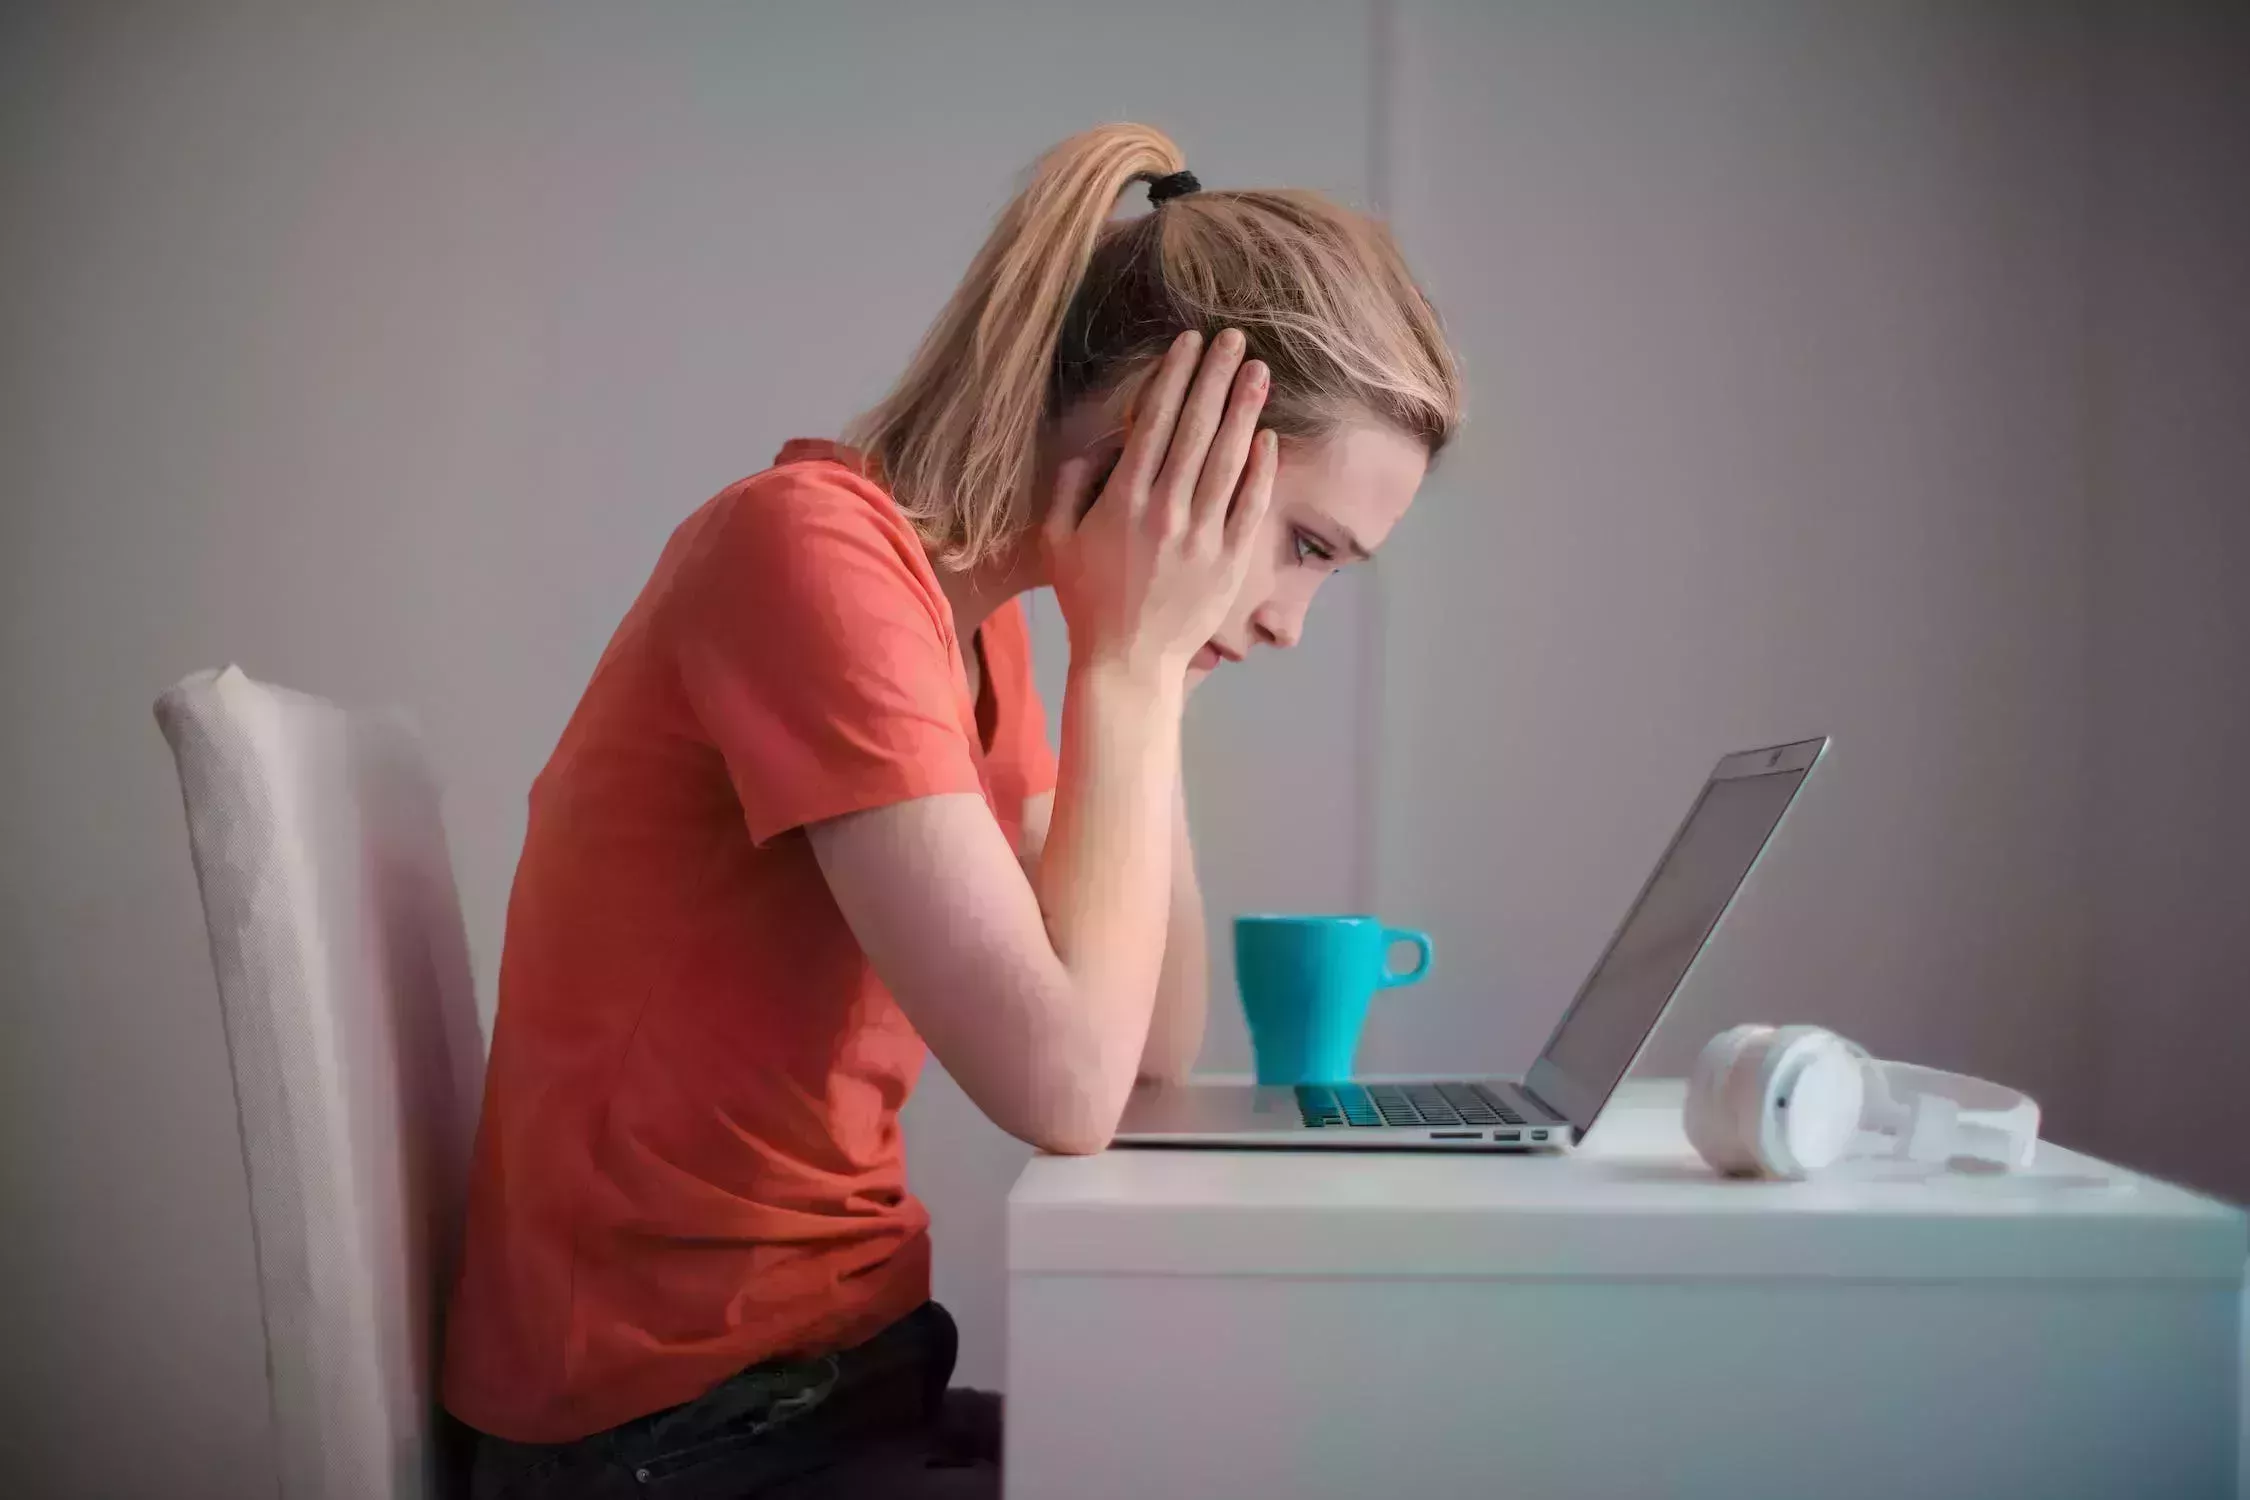 La opinión de un estudiante de psicología: Por qué los adolescentes ven el estrés como algo guay